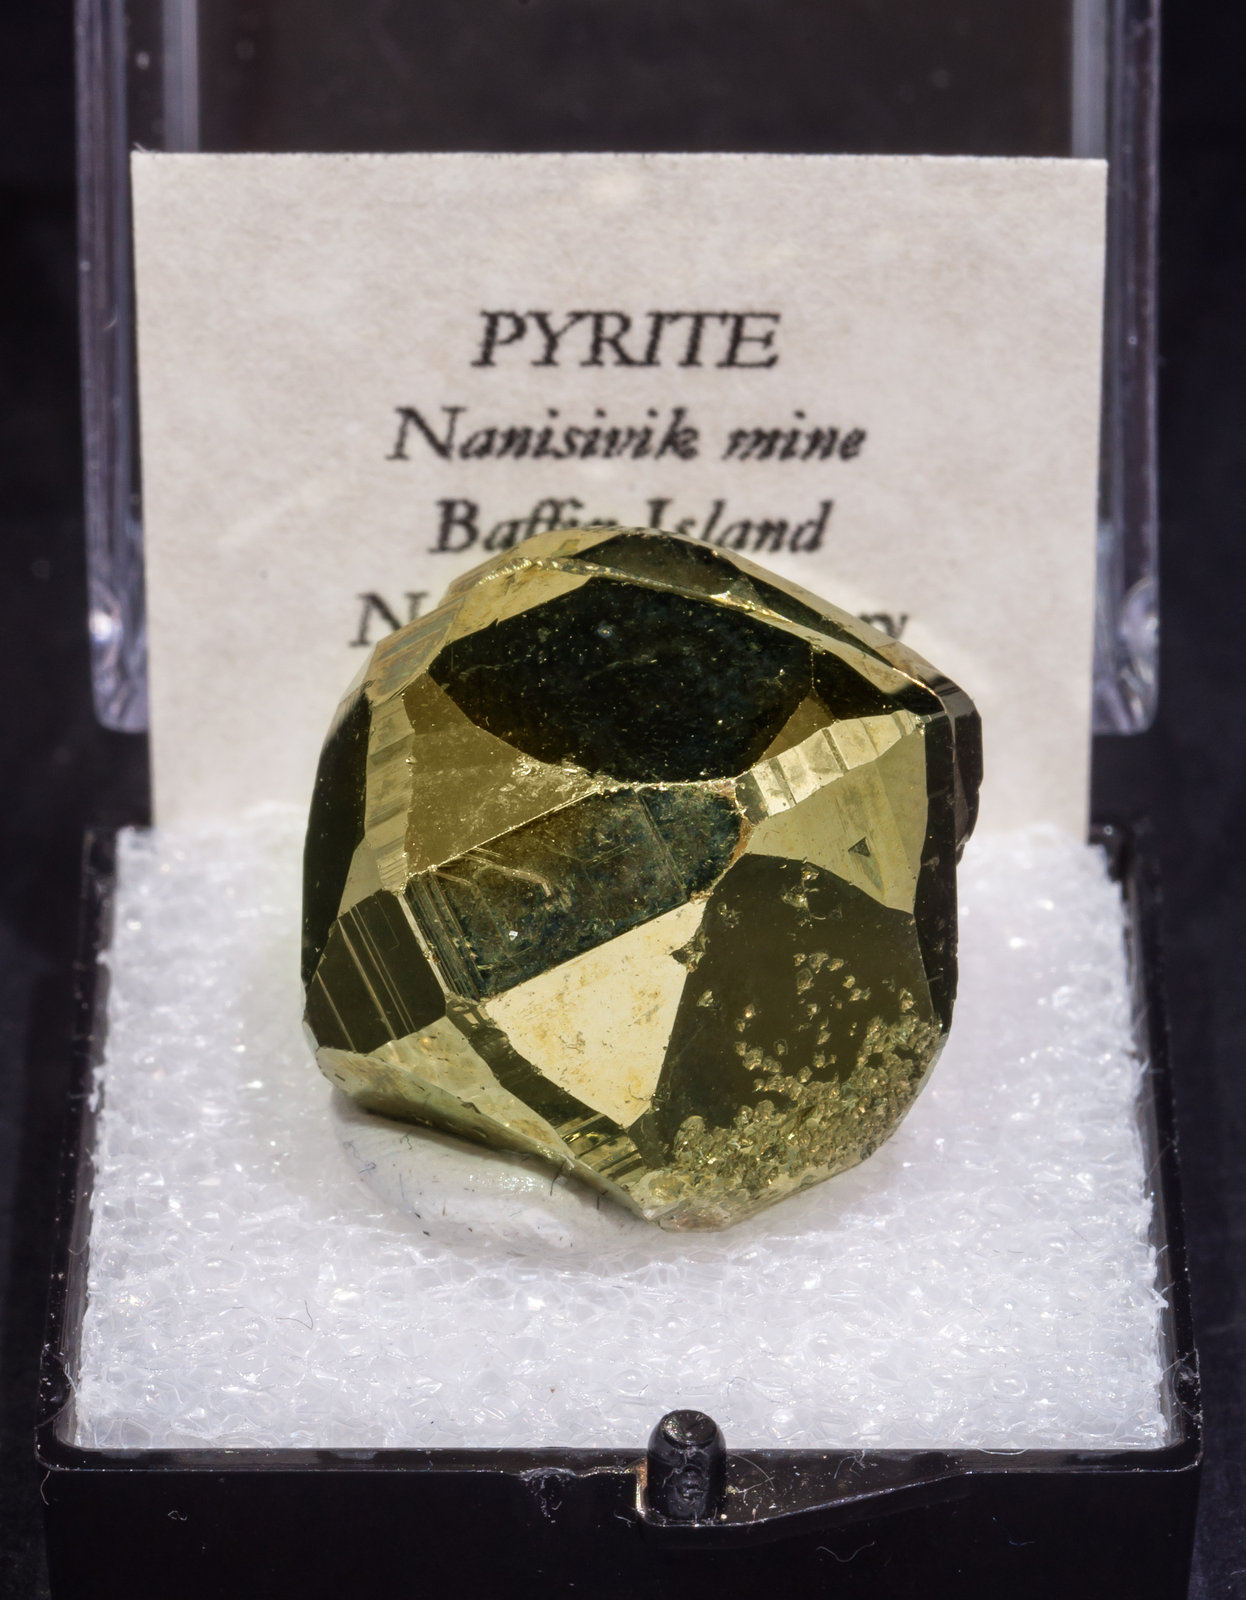 specimens/s_imagesAL5/Pyrite-TQ47AL5f1.jpg